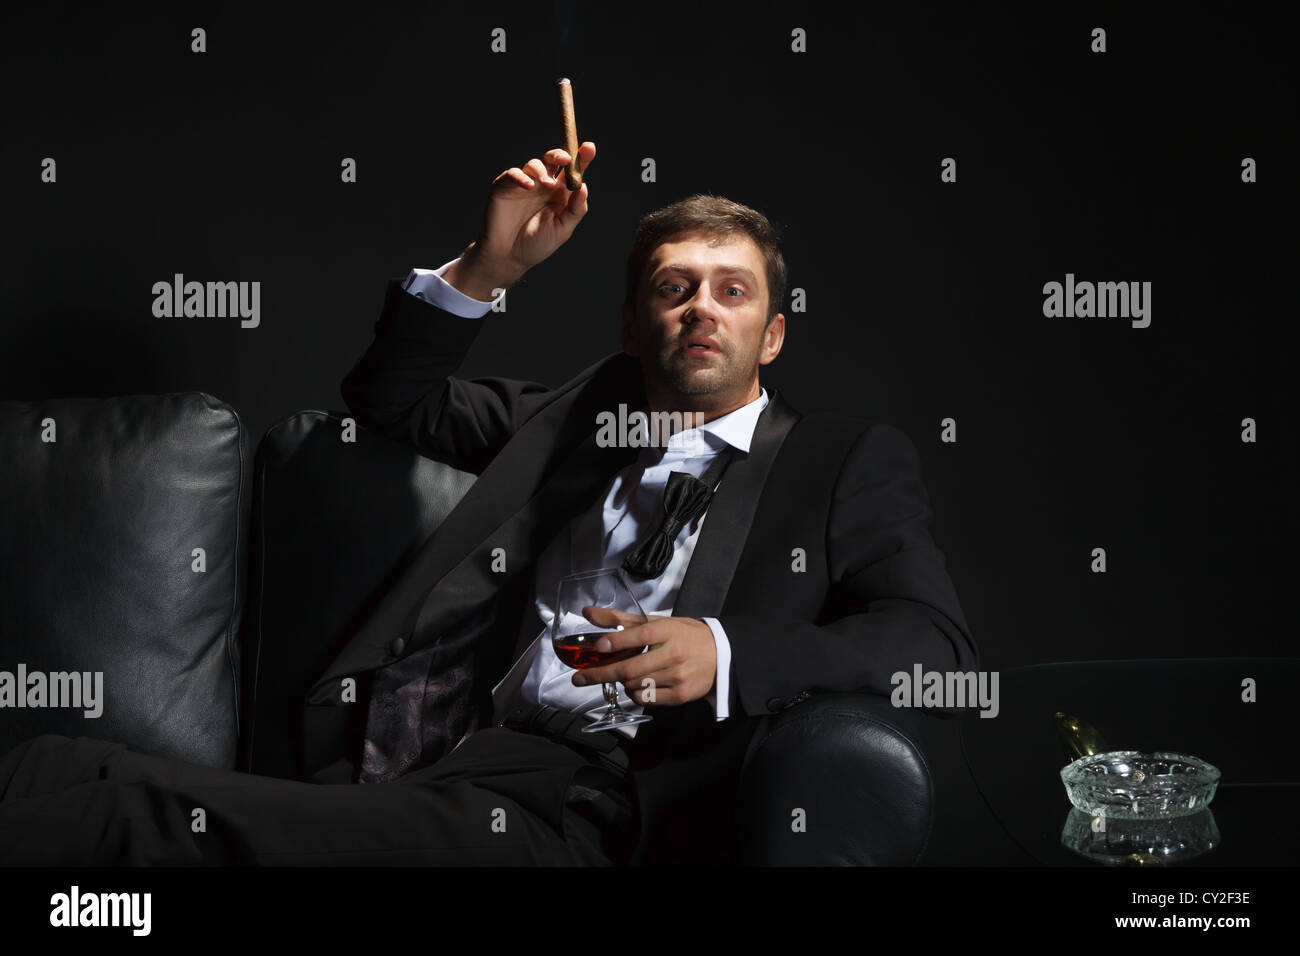 Hombre macho en un elegante esmoquin sentado en la oscuridad de una discoteca puffing sobre un cigarro y beber brandy o coñac Foto de stock